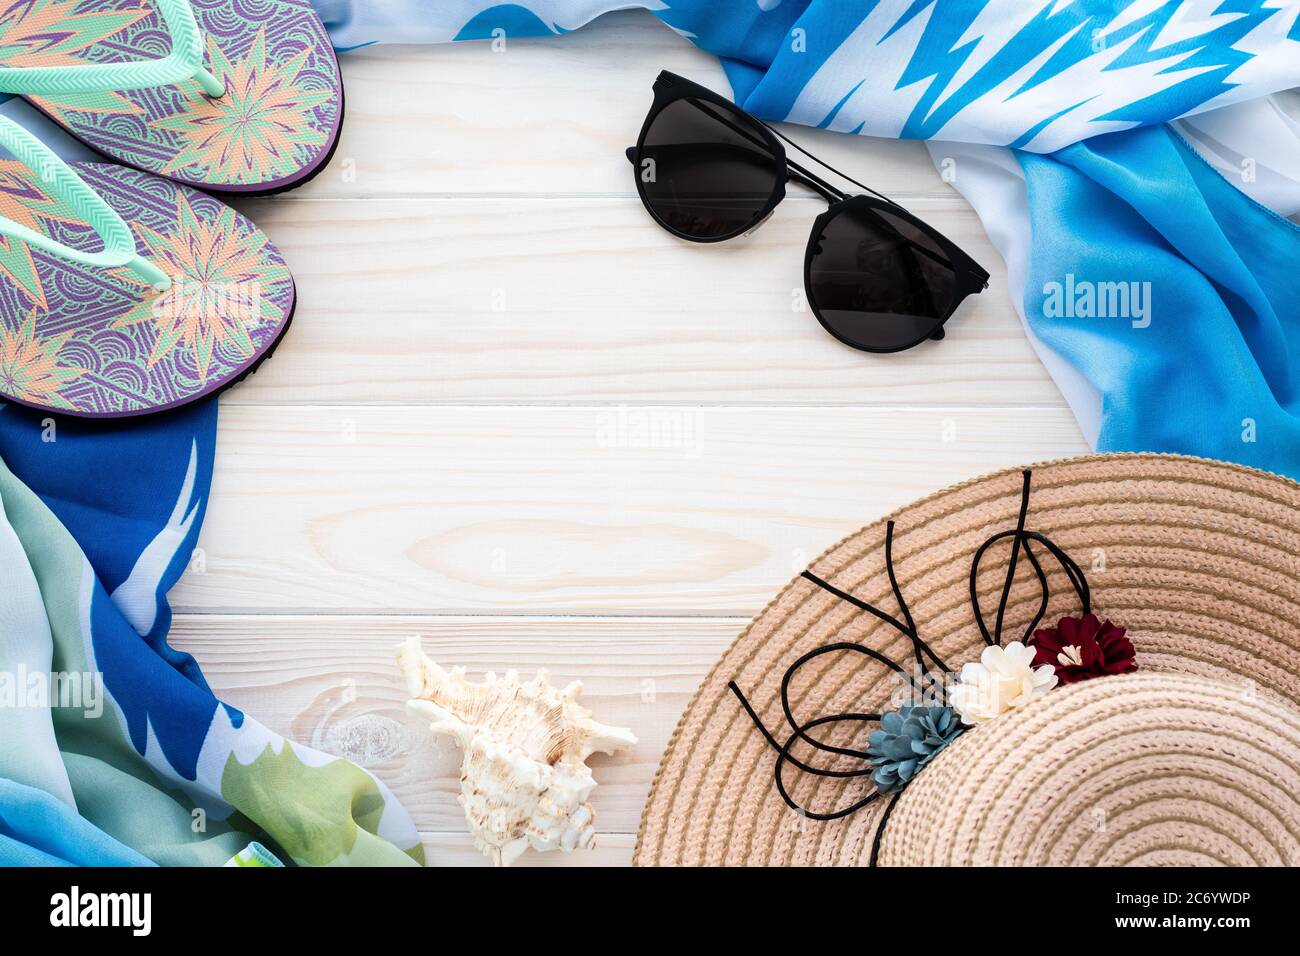 Accessoires de plage d'été. Tongs colorées, coque, lunettes de soleil noires, paréo bleu et chapeau de paille sur fond de bois. Le concept de vacances en mer, le Banque D'Images